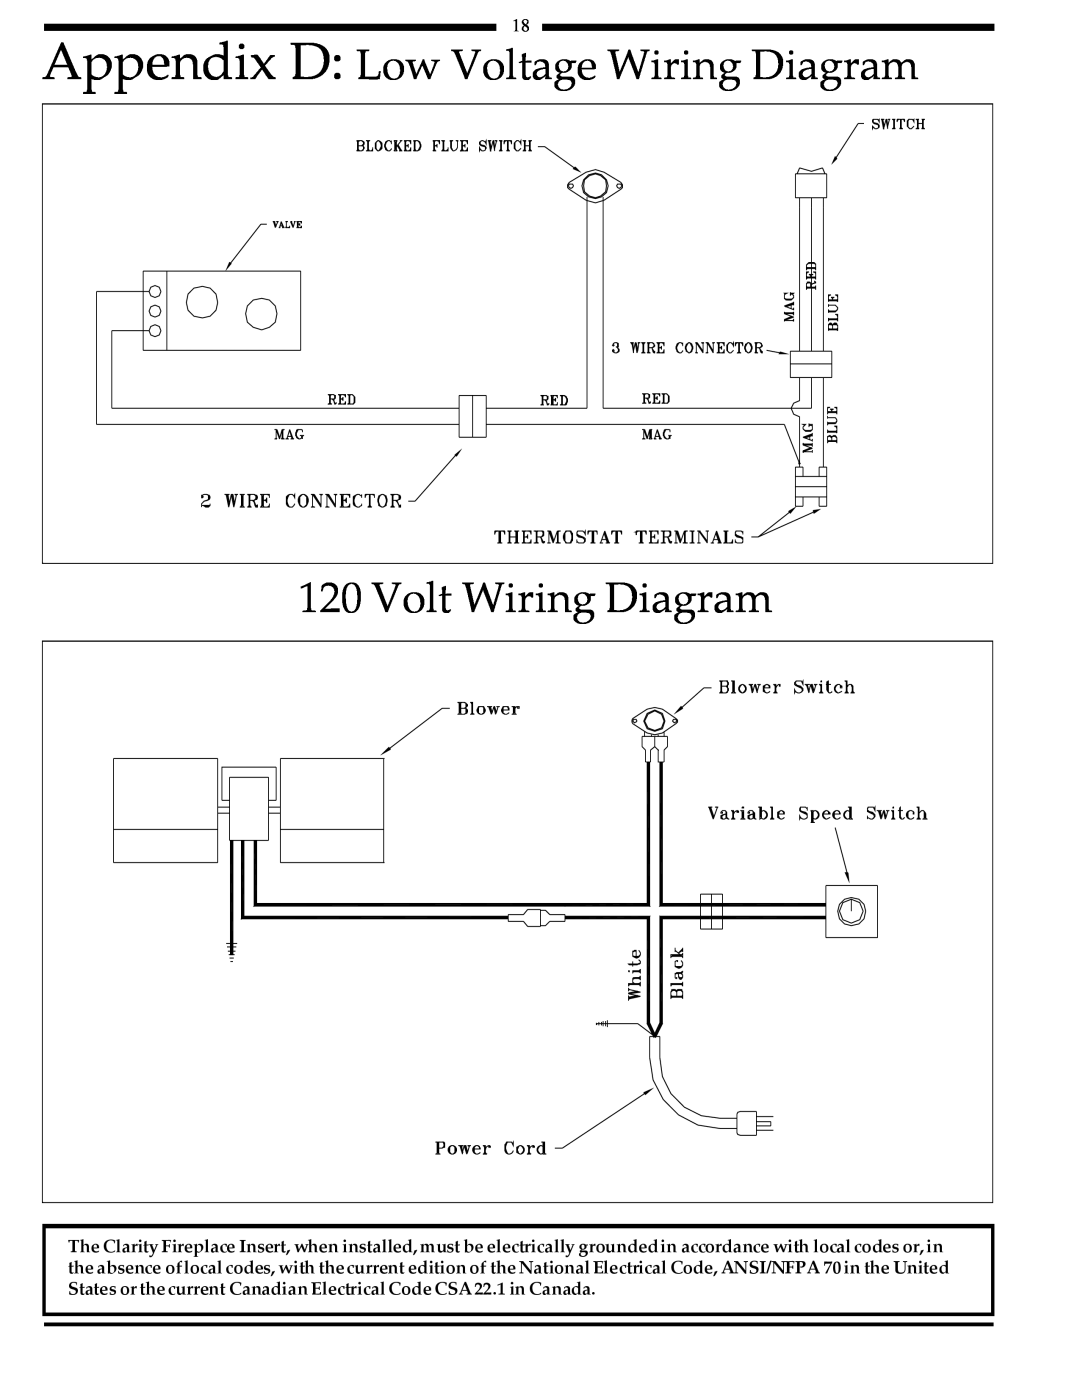 Harman Stove Company 828i manual Appendix D Low Voltage Wiring Diagram, Volt Wiring Diagram 